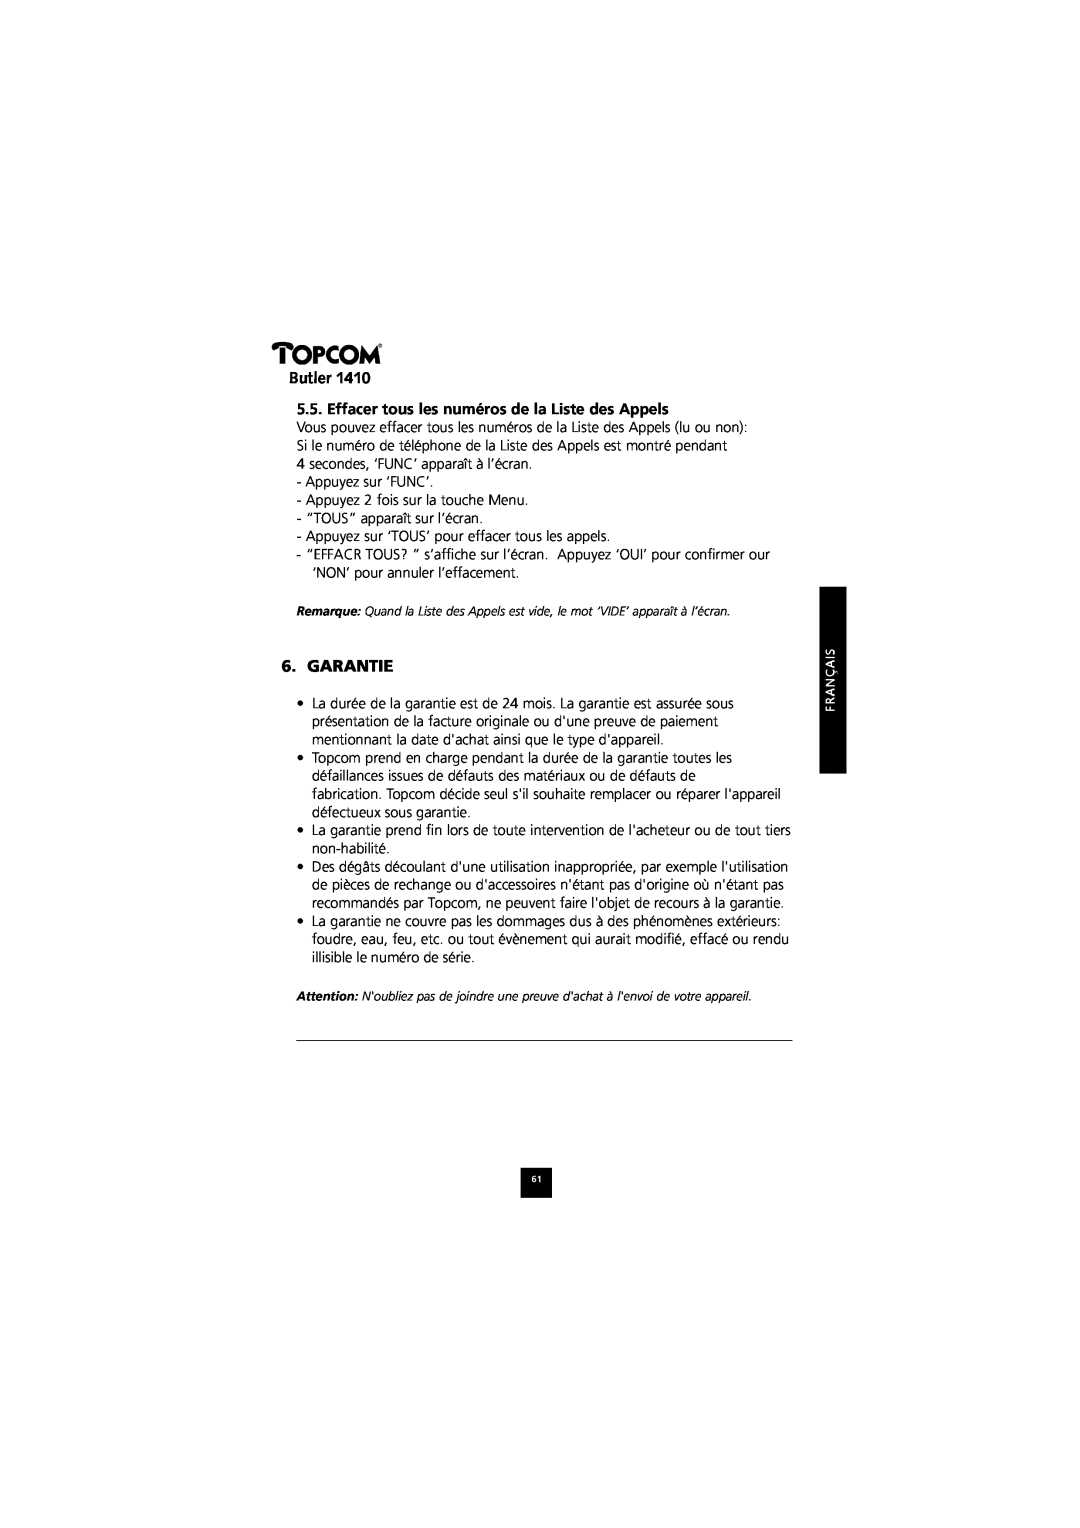 Topcom 1410 manual Effacer tous les numéros de la Liste des Appels, Butler, Garantie 